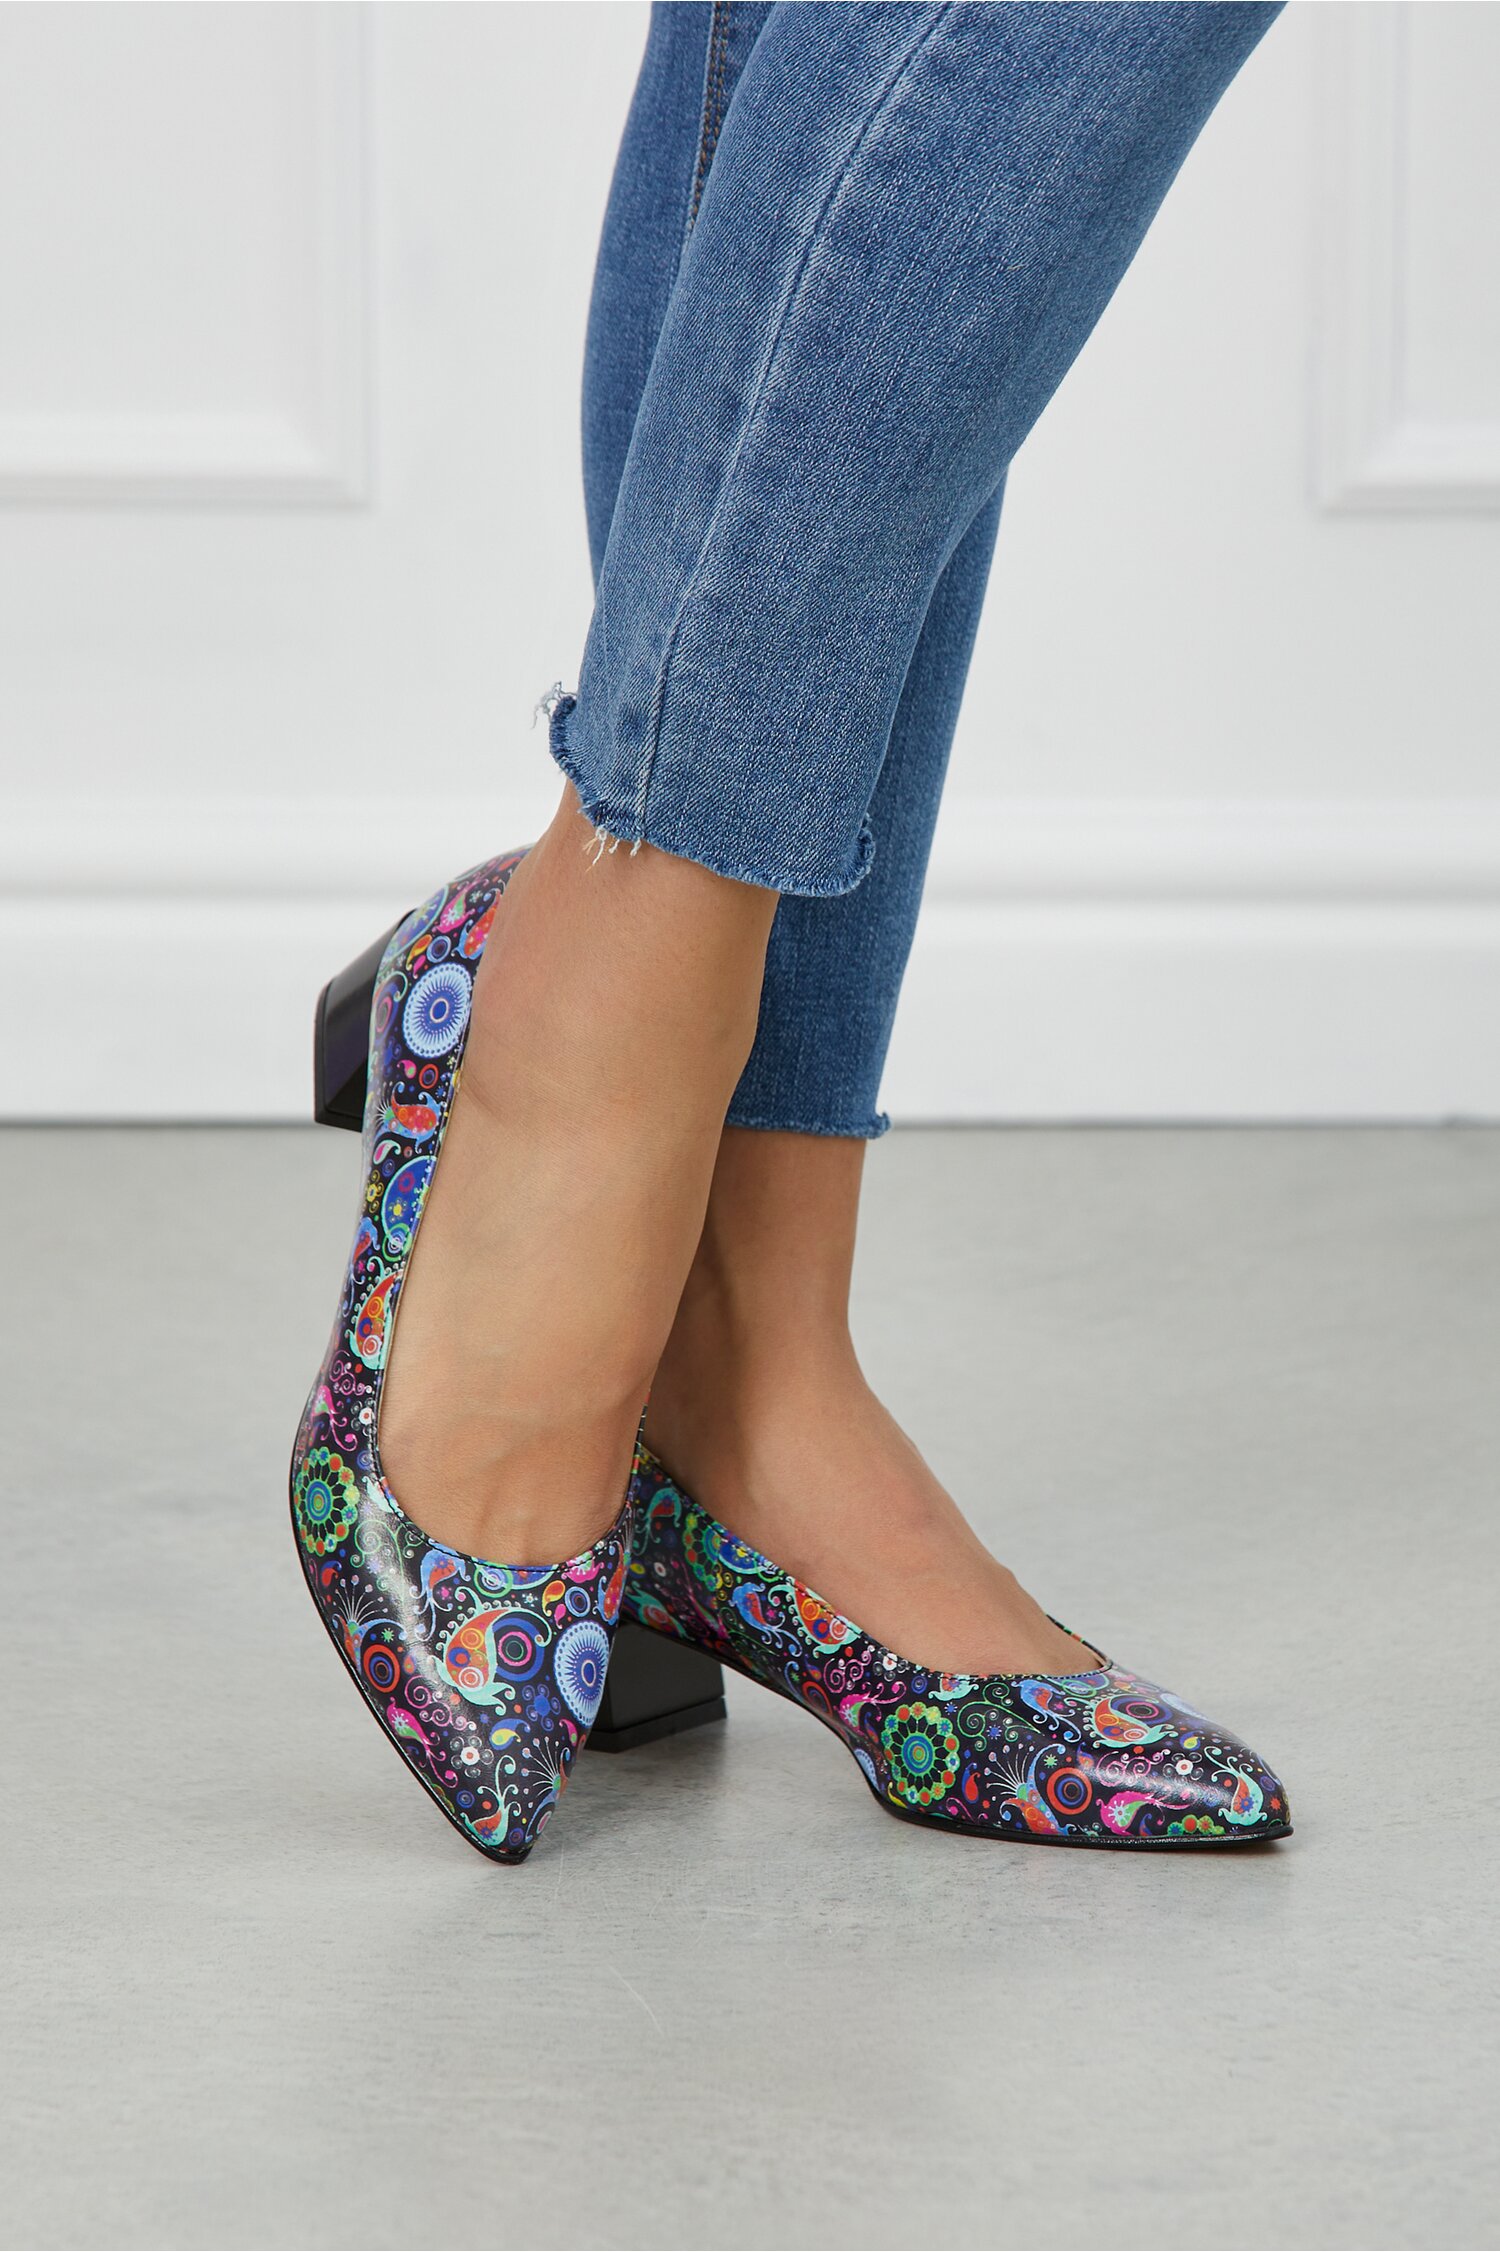 Pantofi Celia negri cu imprimeu multicolor 2022 ❤️ Pret Super dyfashion imagine noua 2022